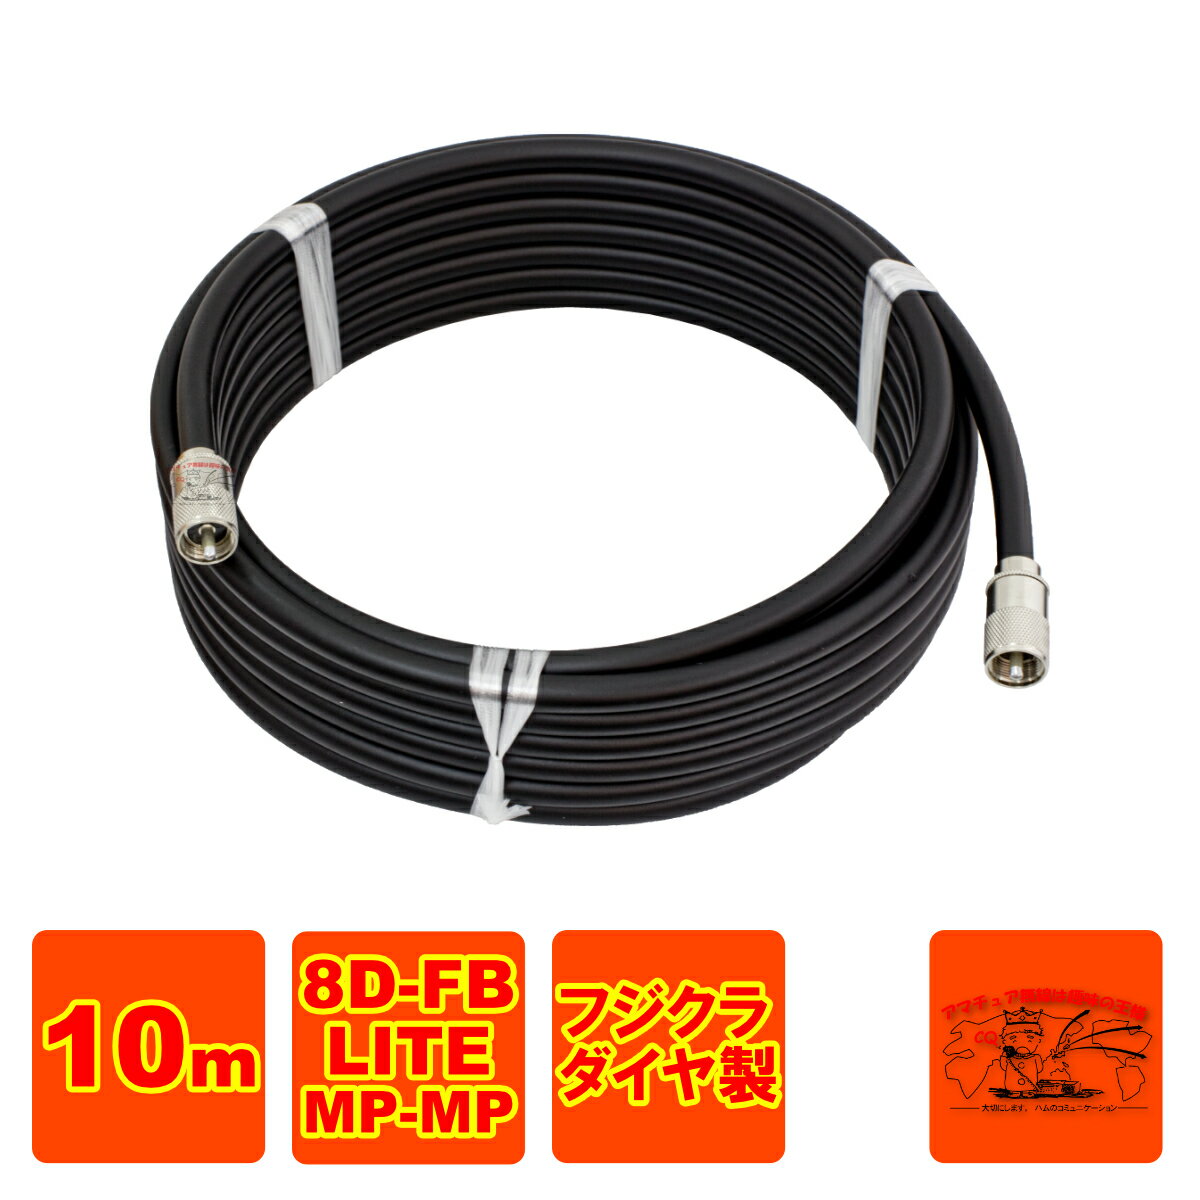 同軸ケーブルの種類：8D-FB-LITE 黒色 同軸ケーブルのメーカー：株式会社フジクラ・ダイヤケーブル 同軸コネクター：MP-8ニッケルメッキ 長さ：10m